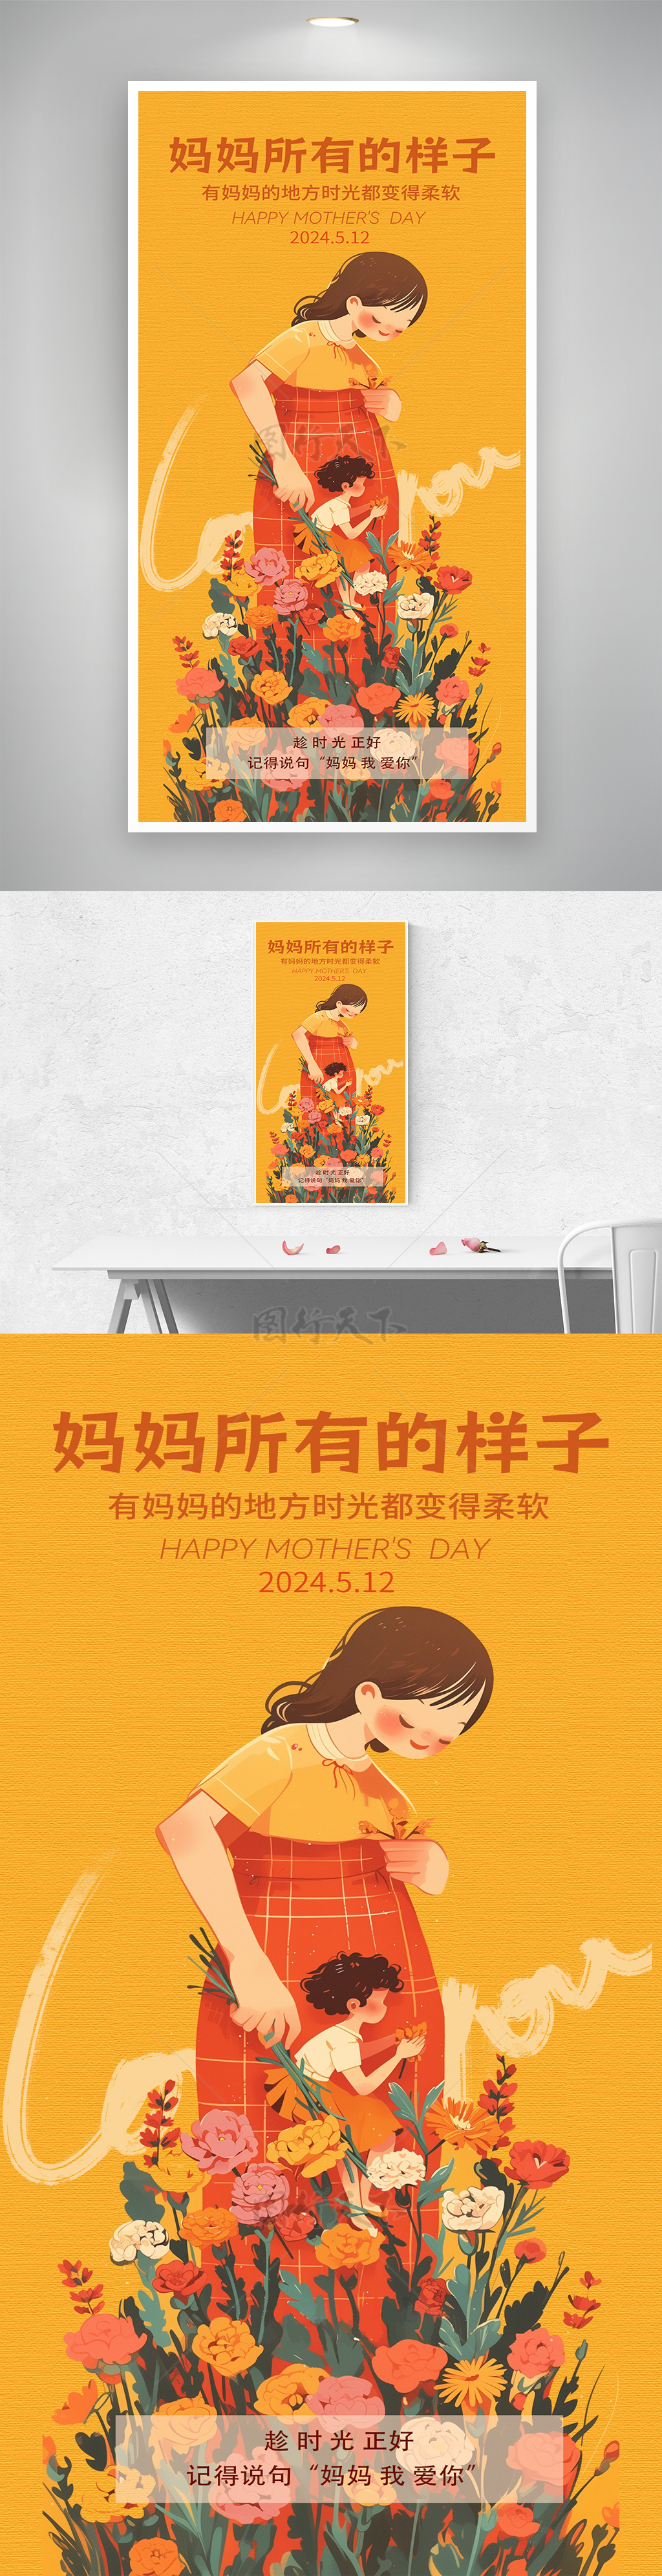 黄色康乃馨母子母亲节启动页海报